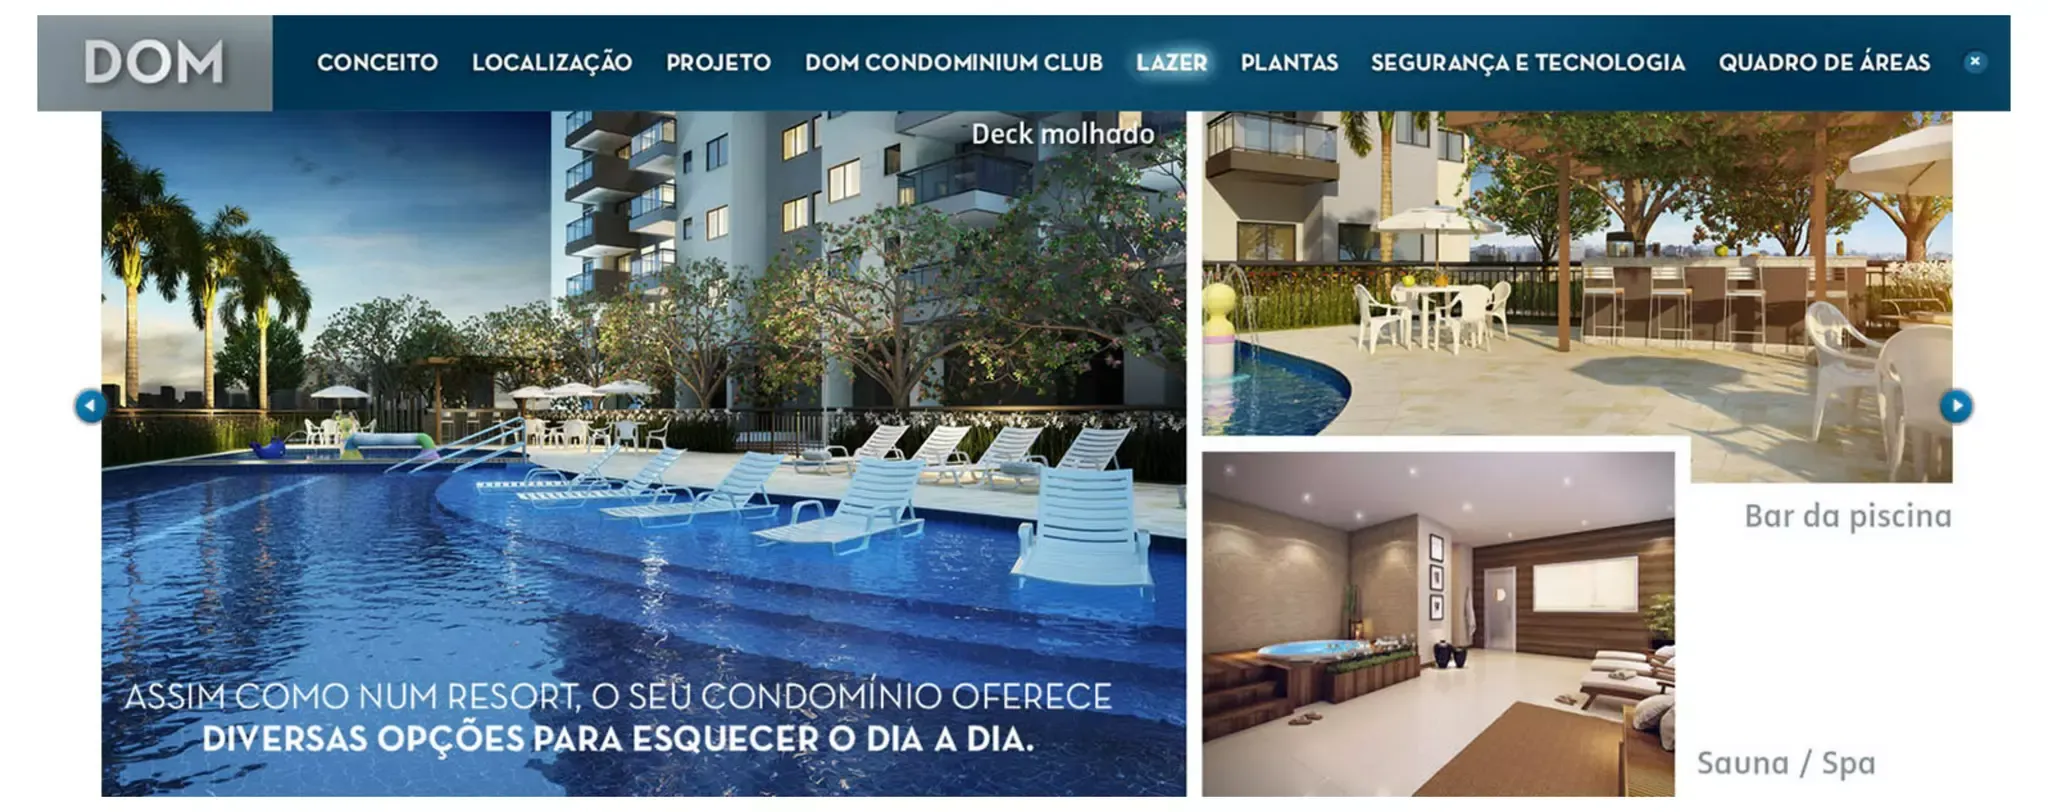 Dom Residencial Norte Shopping - Lopes Imobiliária no Rio de Janeiro